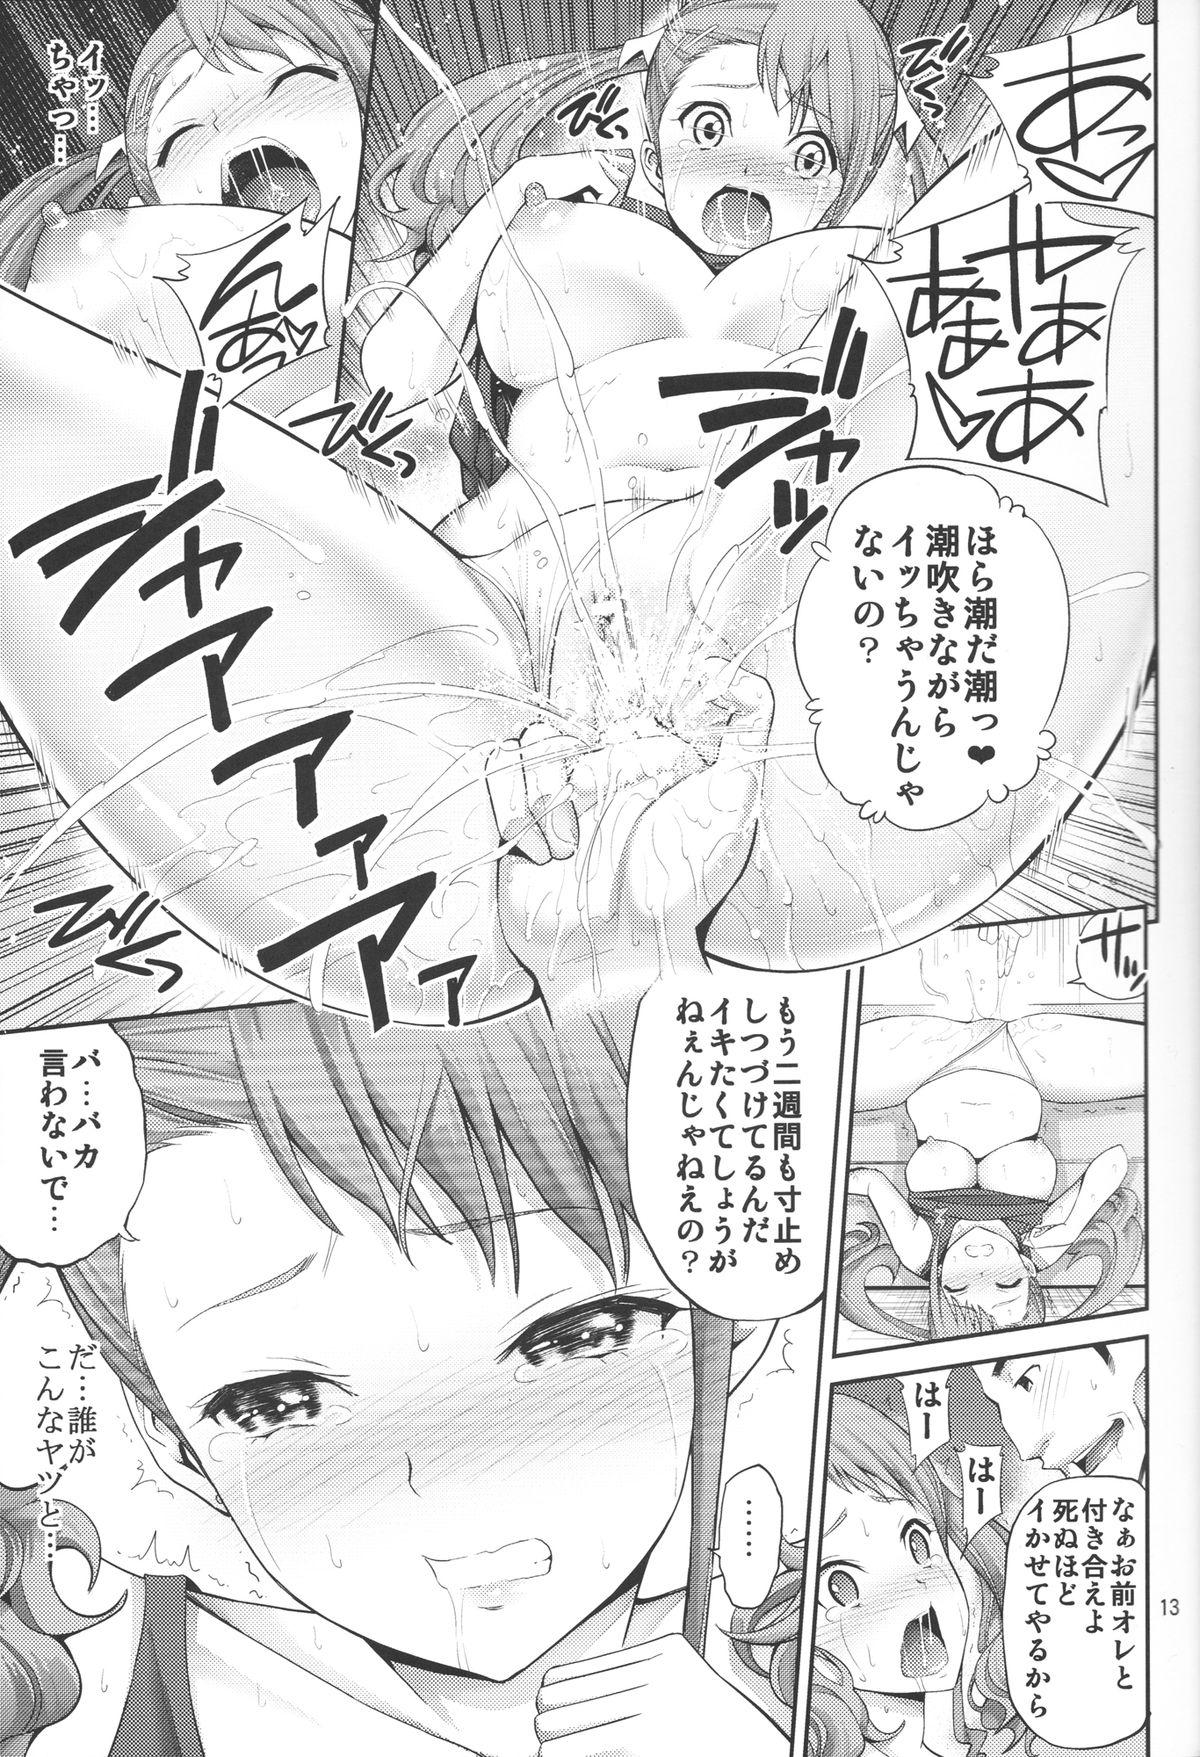 Ano Anaru no Sundome Manga o Bokutachi wa Mada Shiranai. 11